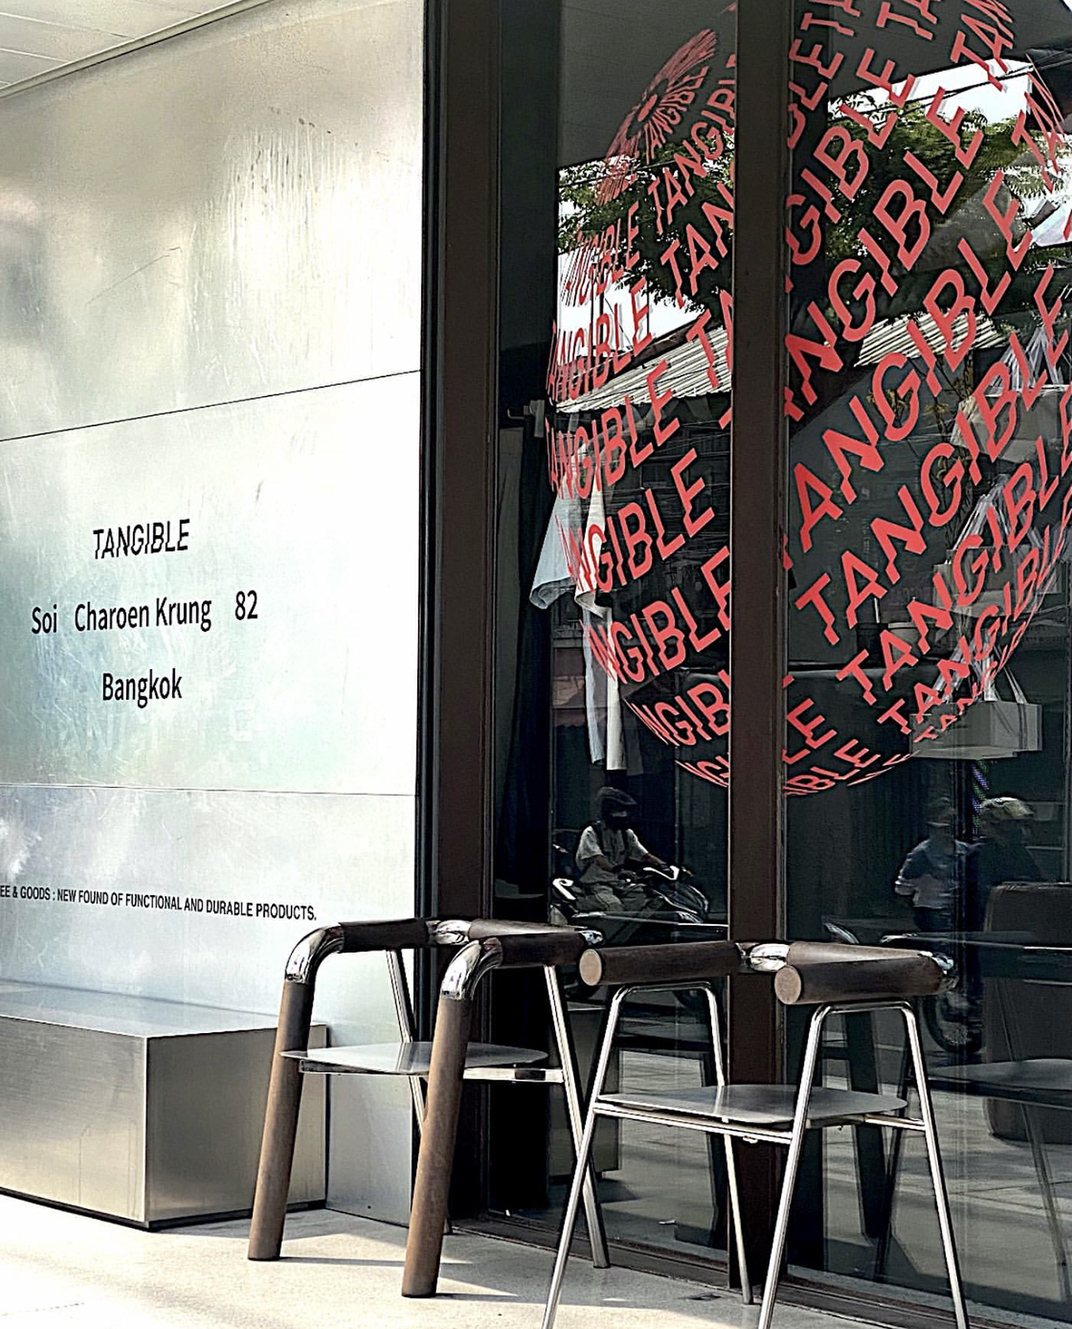 咖啡馆和零售店TANGIBLE 泰国 曼谷 深圳 上海 北京 广州 武汉 咖啡店 餐饮商业 logo设计 vi设计 空间设计